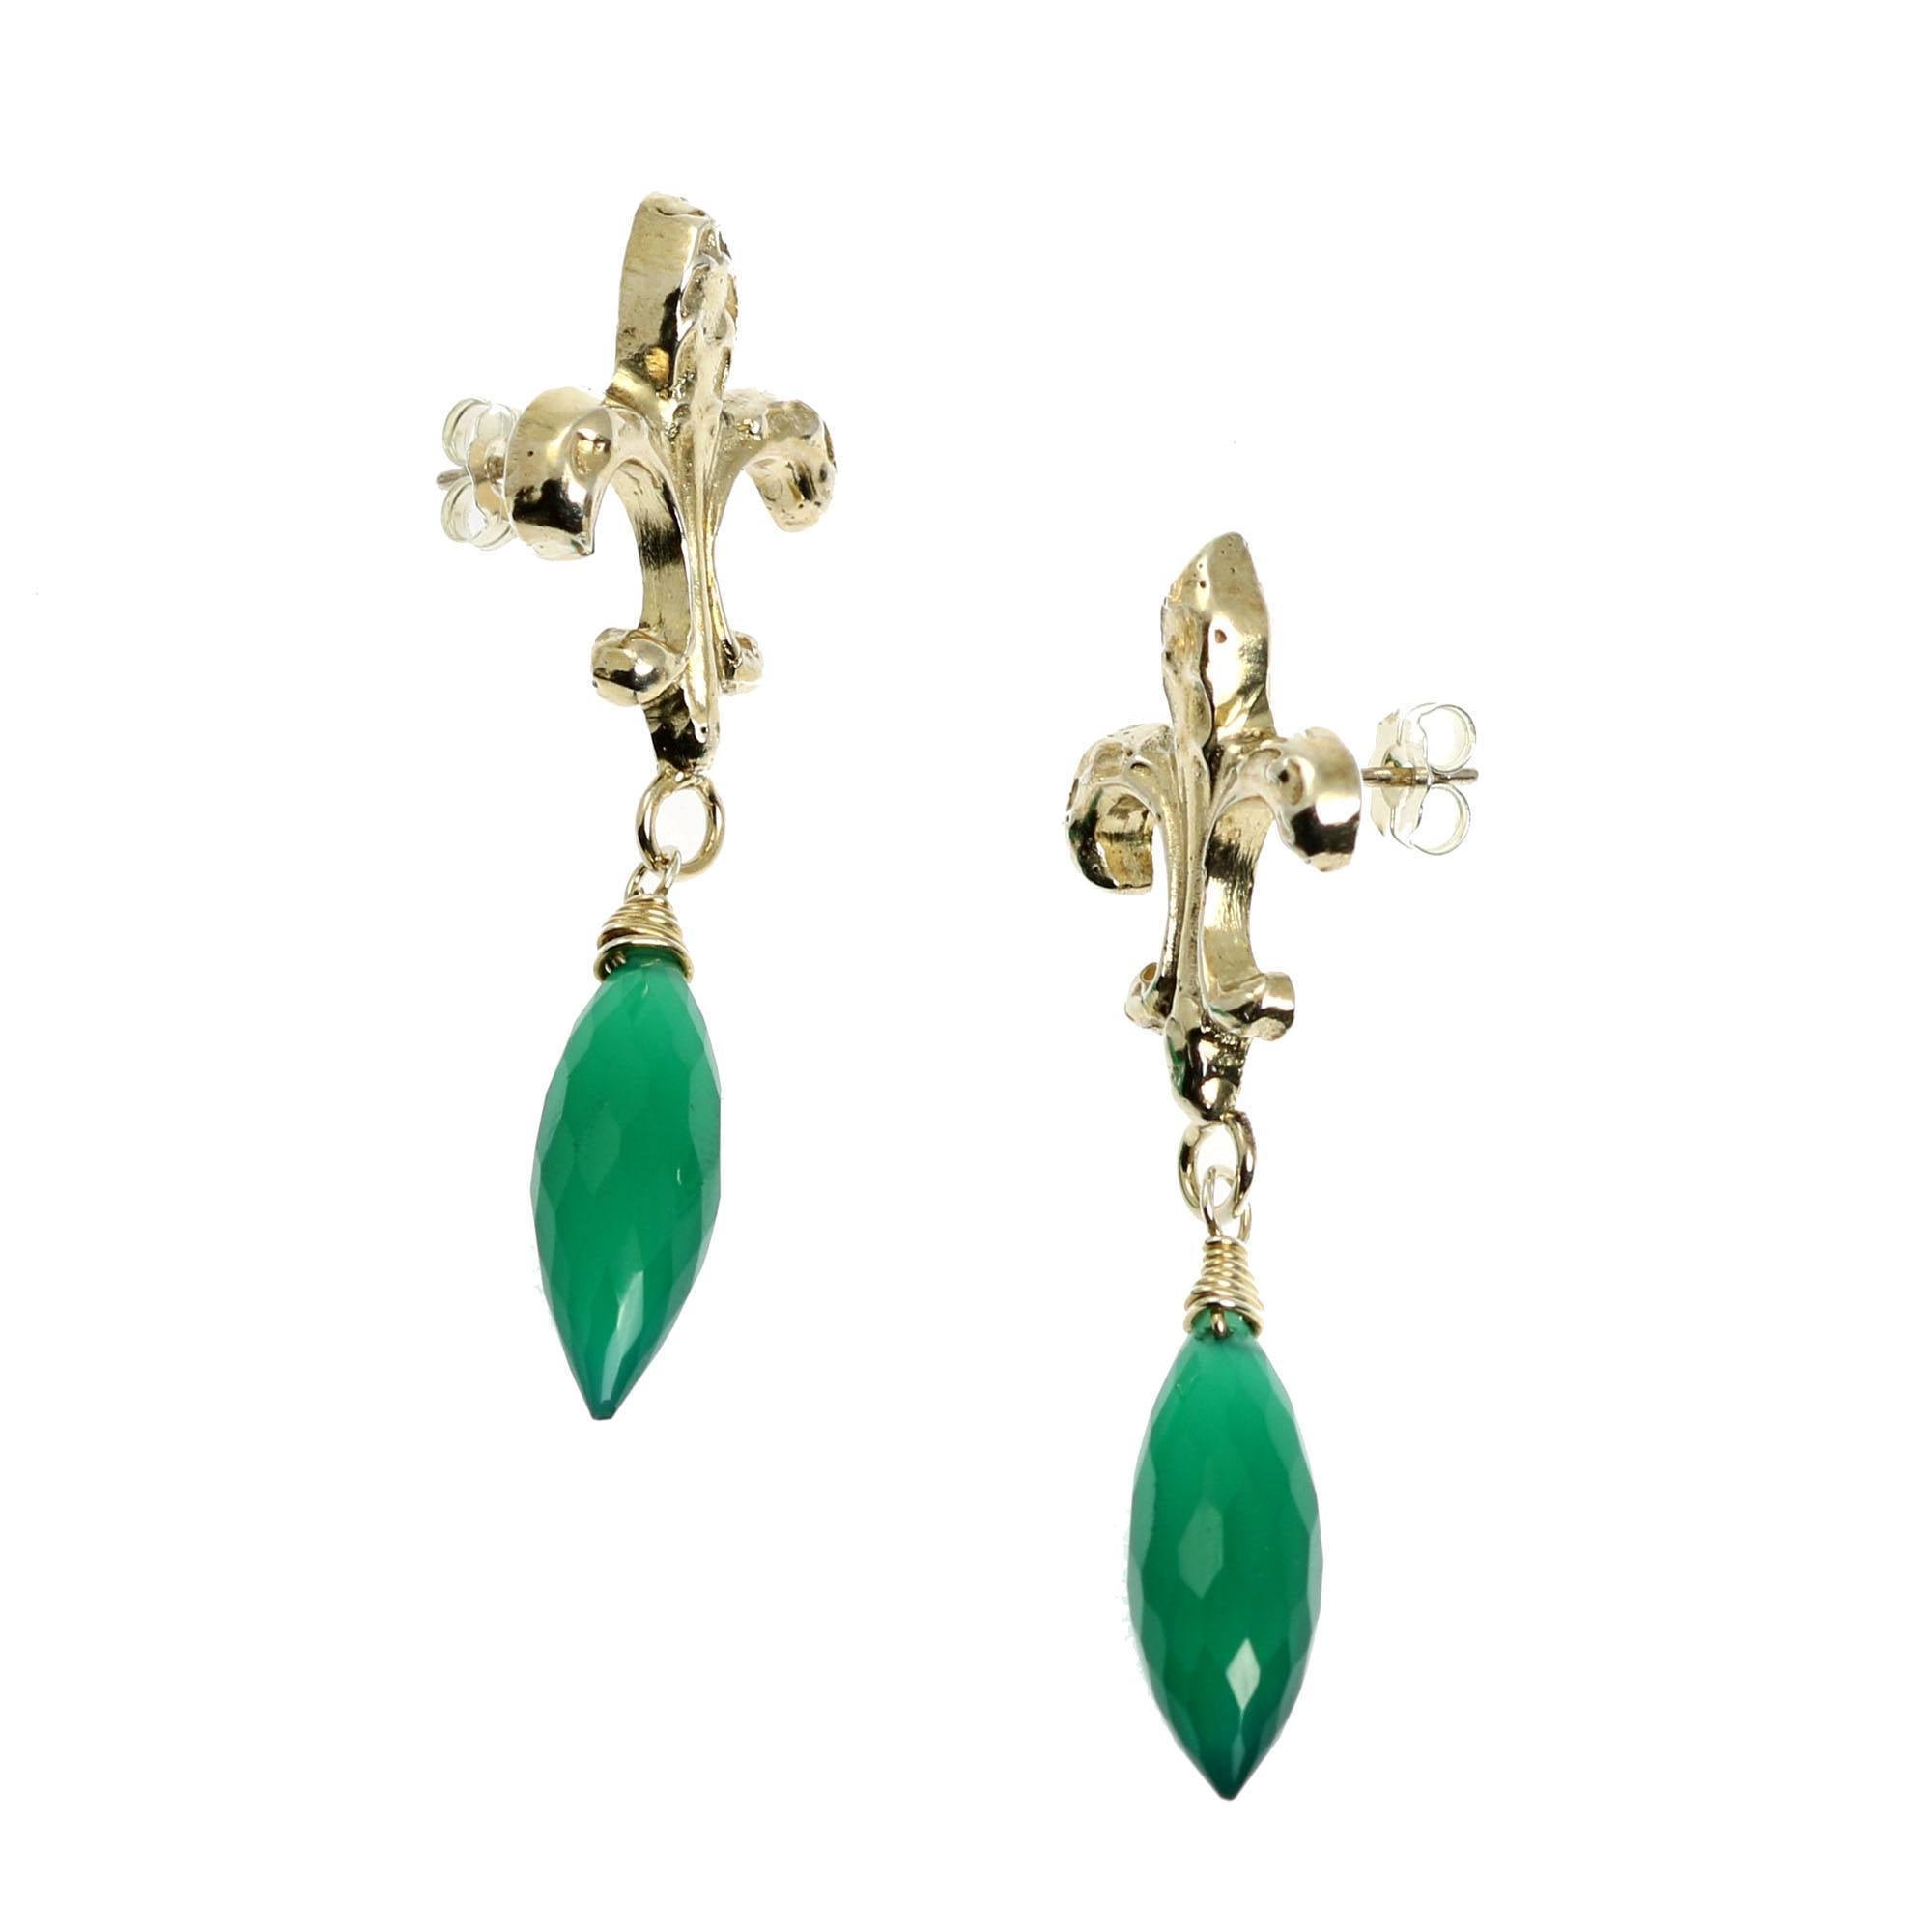 Side View - Green Onyx Sterling Silver Fleur-de-lis Earrings